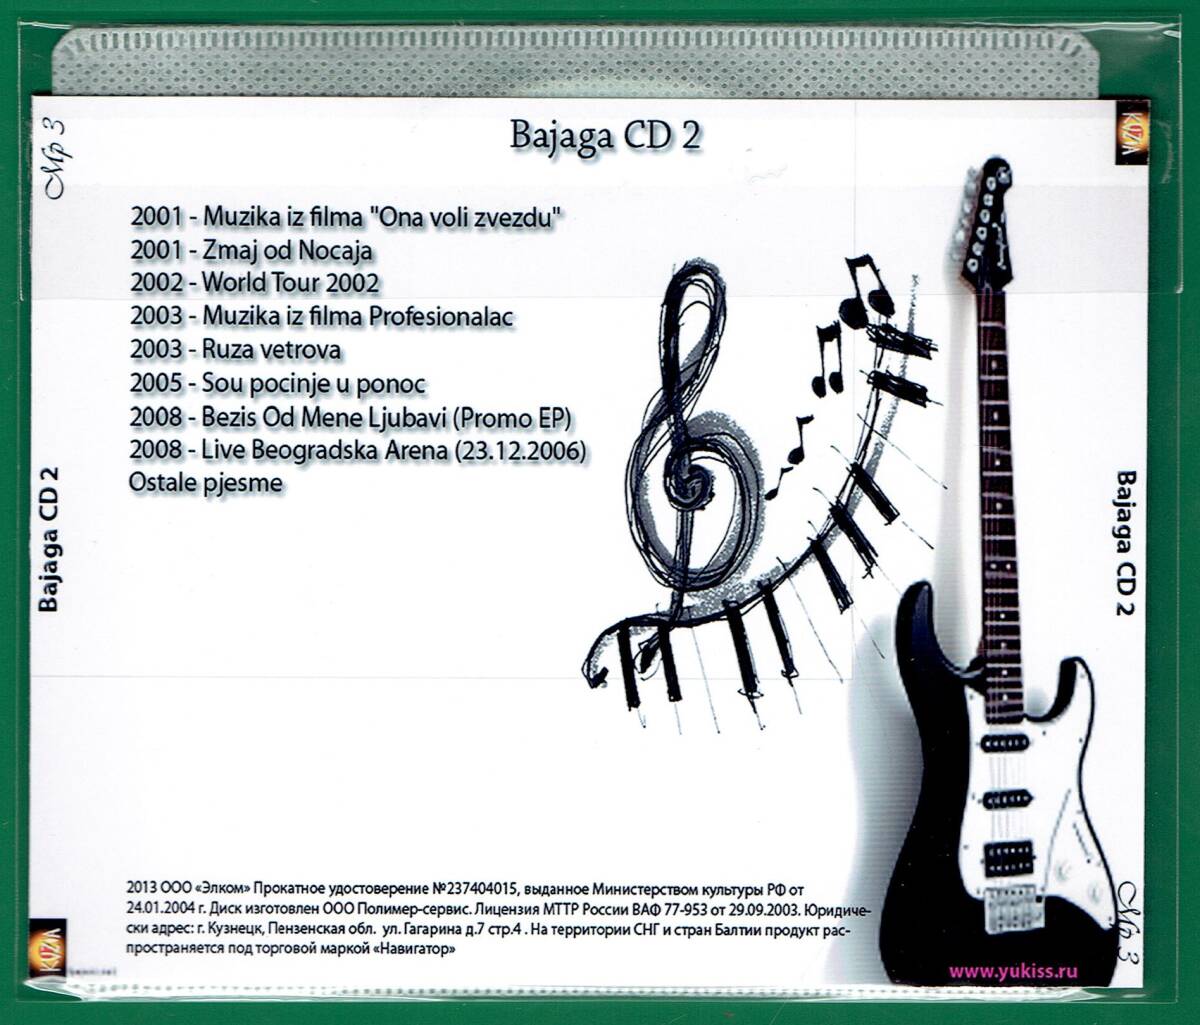 【現品限り・レアー品】BAJAGA CD 2 大アルバム集 【MP3-CD】 1枚CD◇_画像2